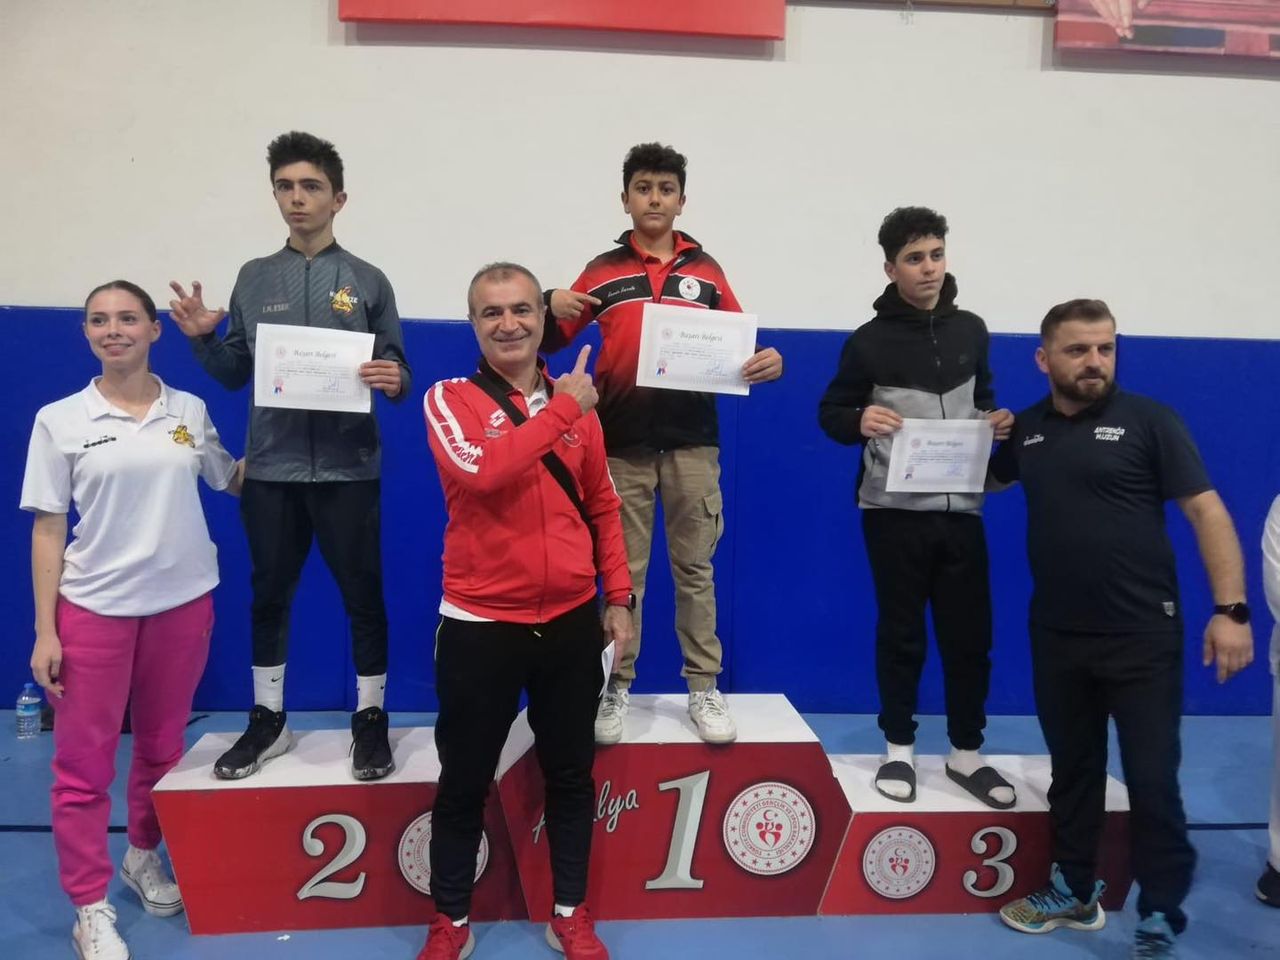 Kemer Belediyesi Karate Takımı, Antalya'da büyük başarı elde etti.